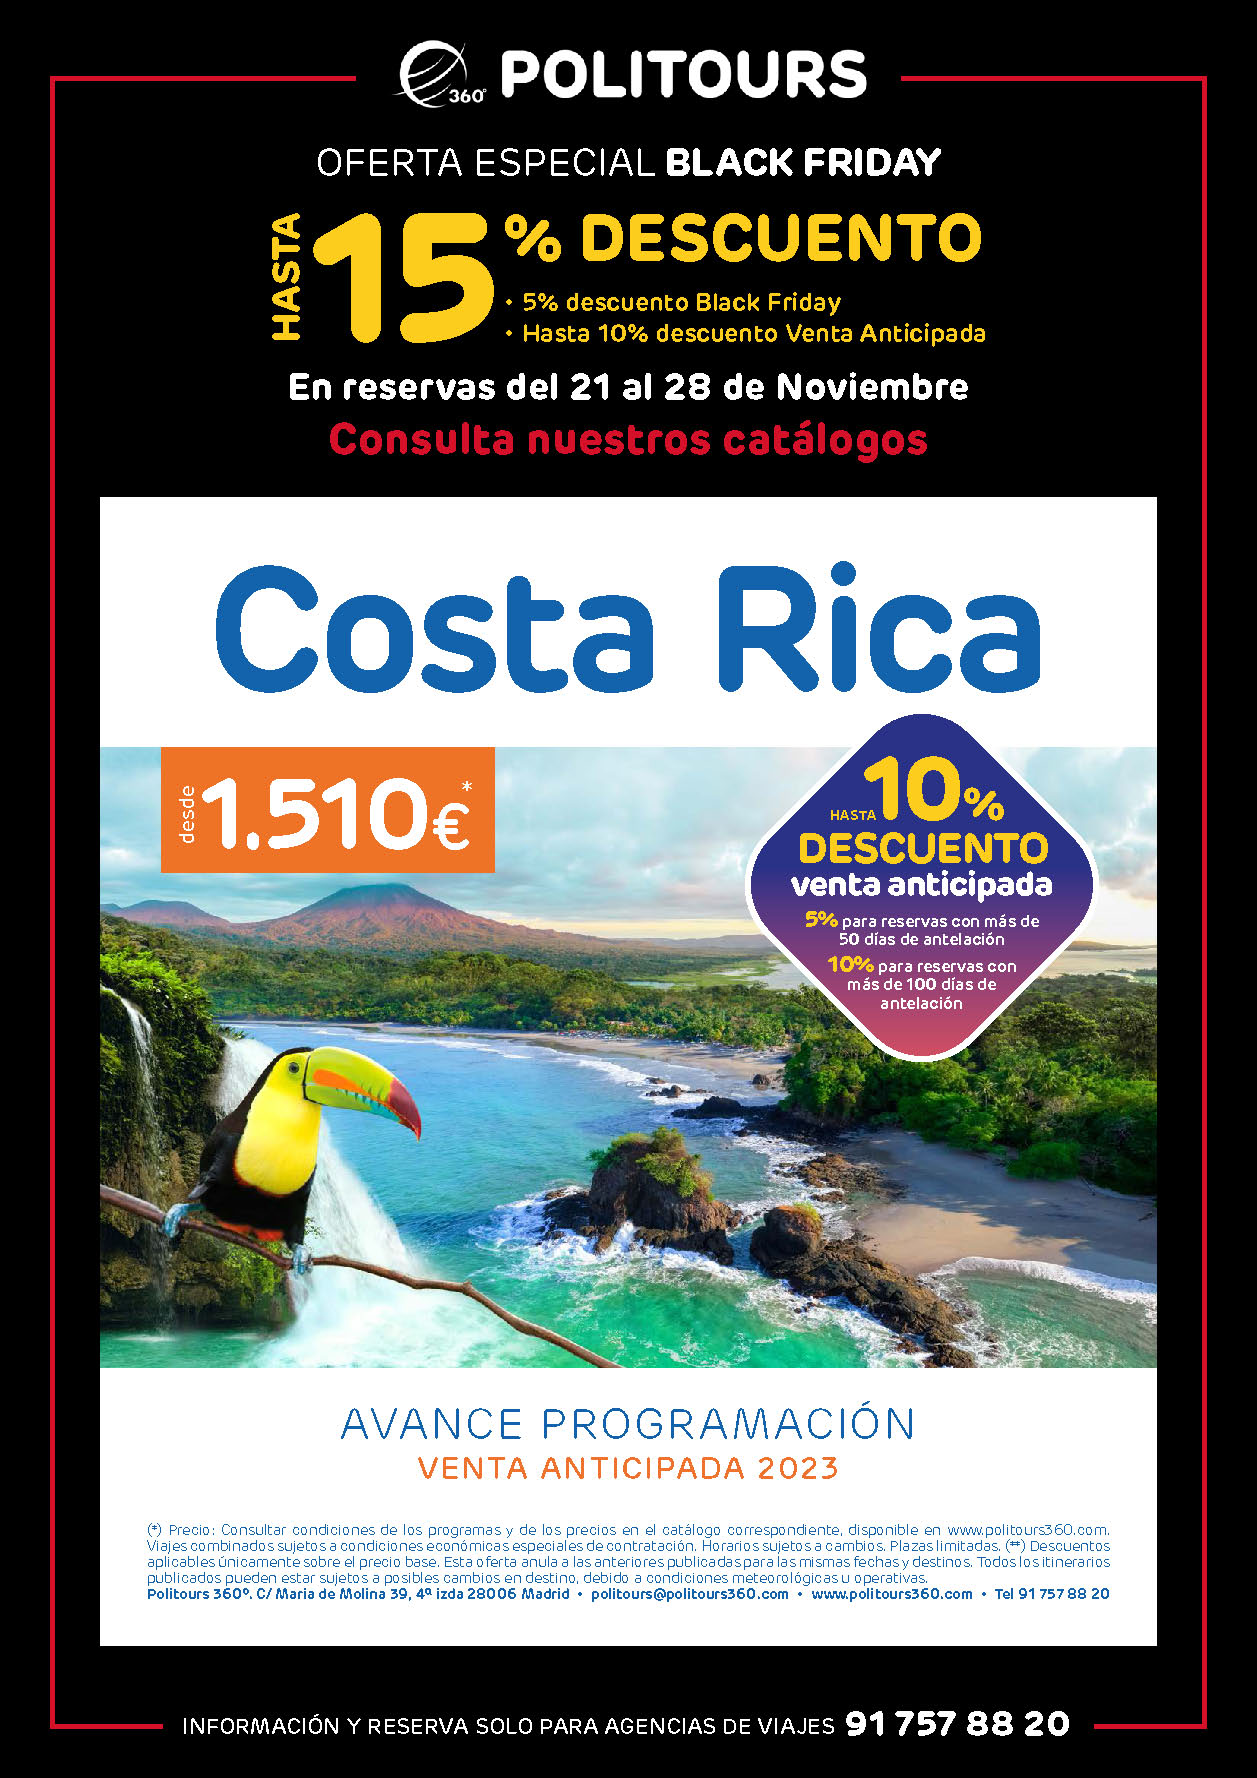 Oferta Politours Black Friday 2022 descuentos en viajes a Costa Rica en 2023